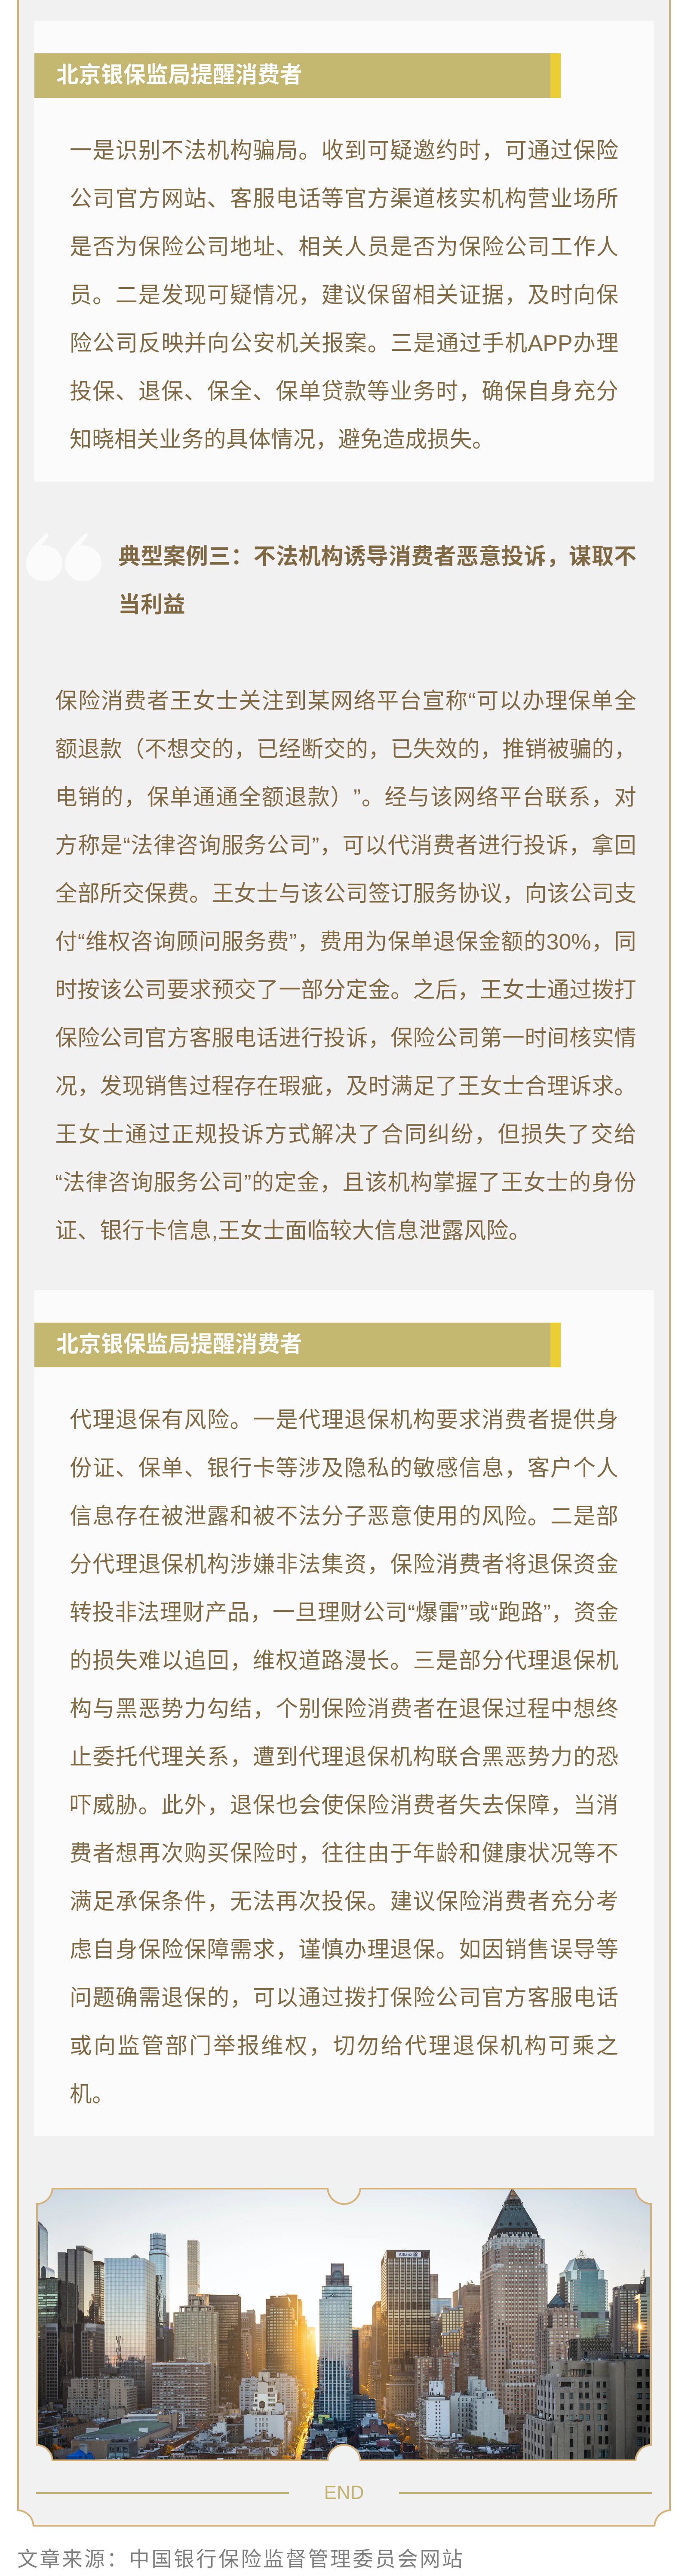 北京银保监局消费者风险提示： 警惕购买保险后的三类骗局02.jpg